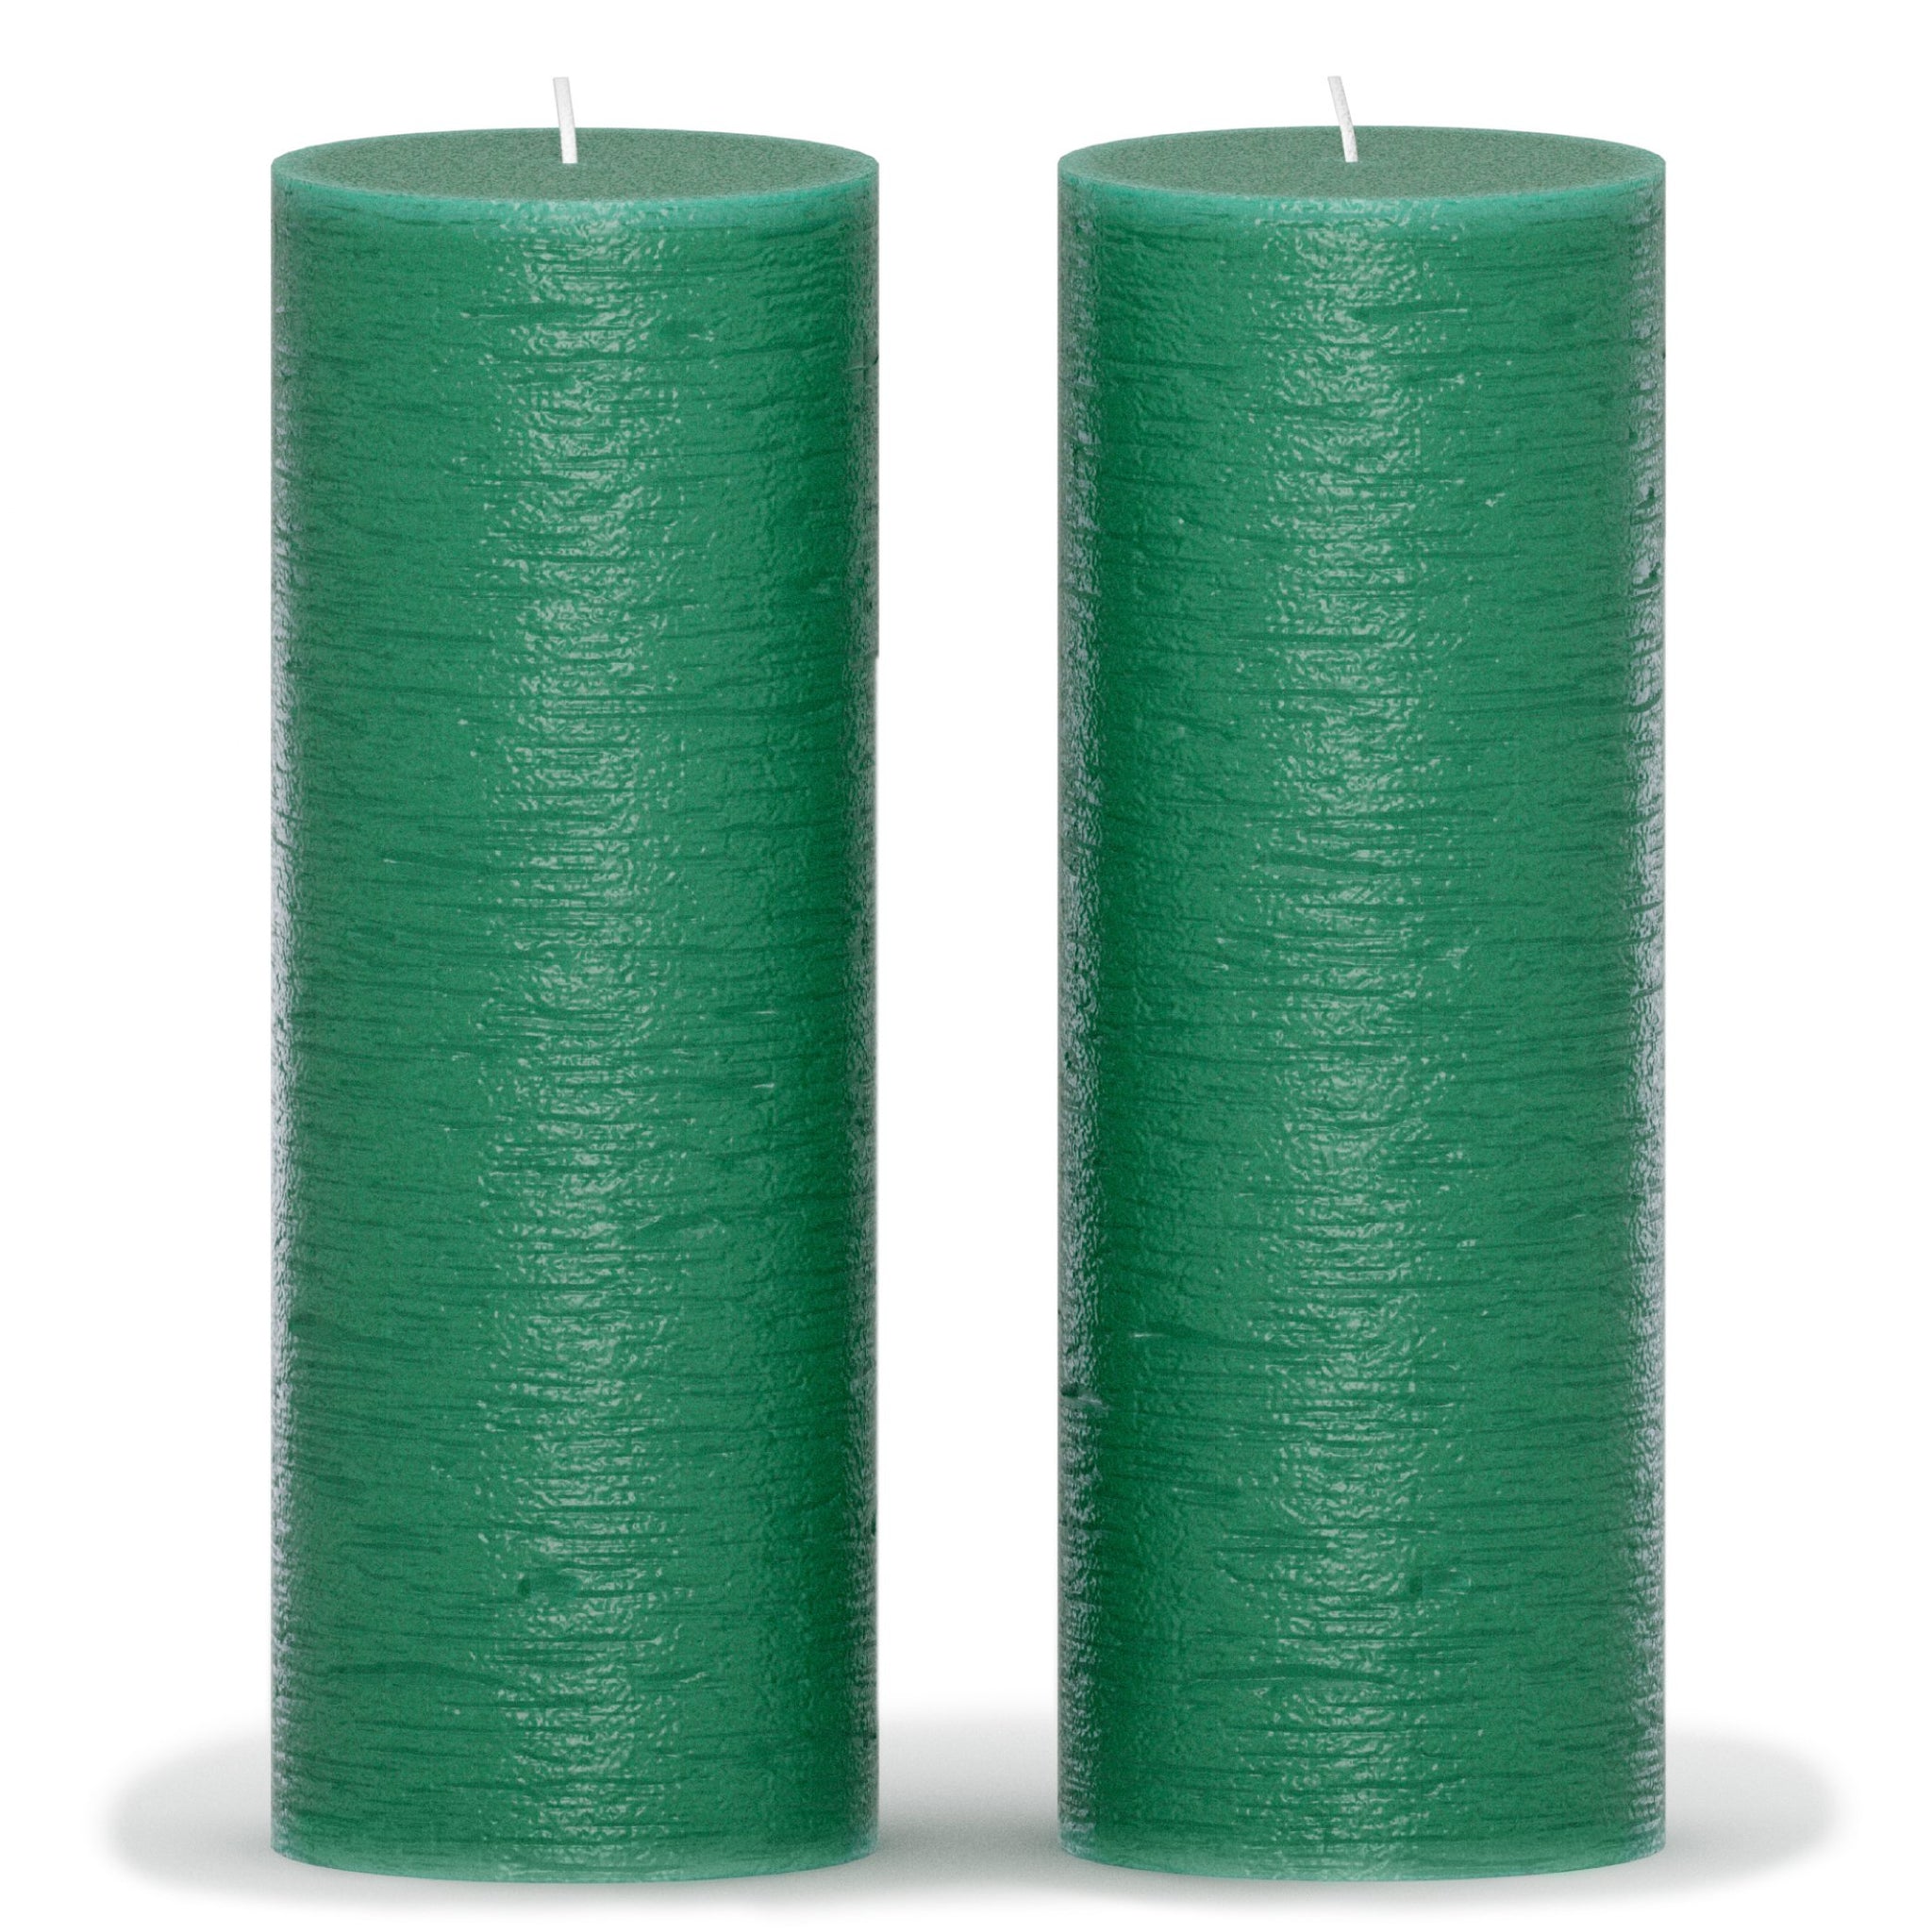 CANDWAX Green Pillar Candles 8" - Set of 2pcs